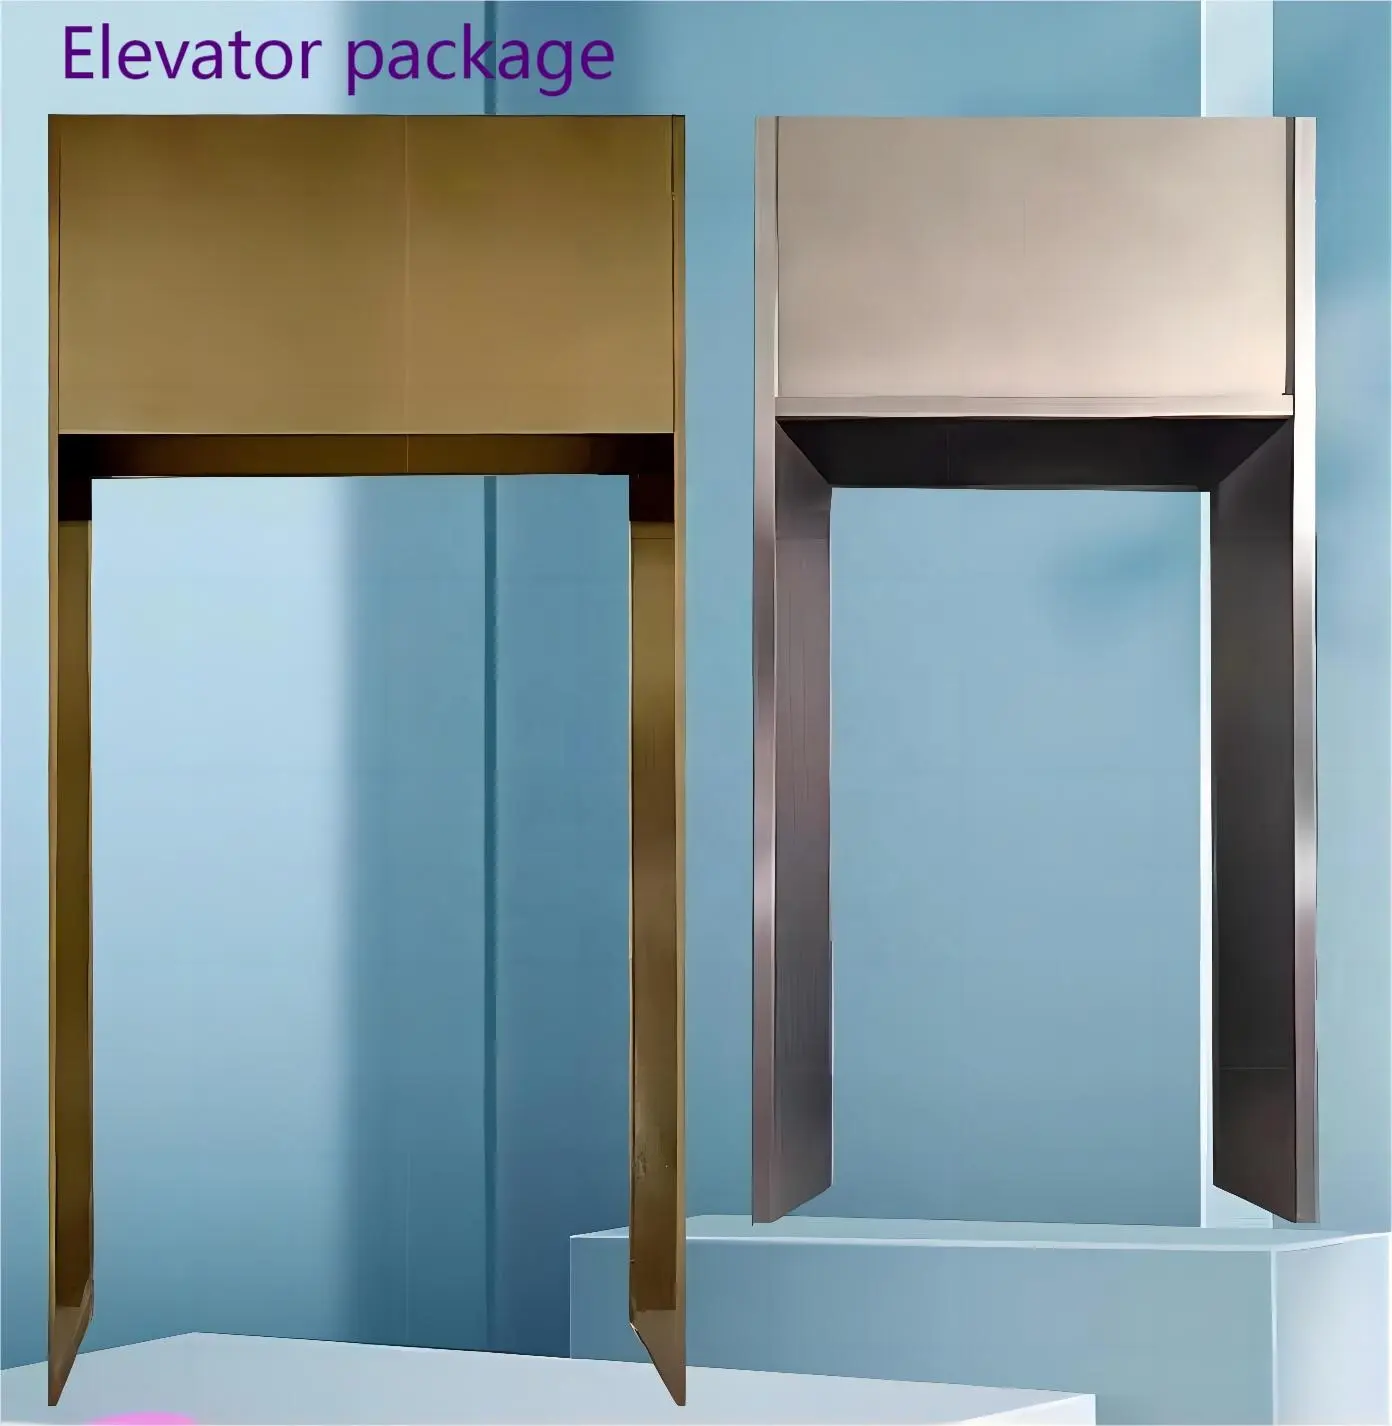 金属部品シェルリフトケーシングエッジエレベータードアフレームステンレス鋼ハウジングエレベーター